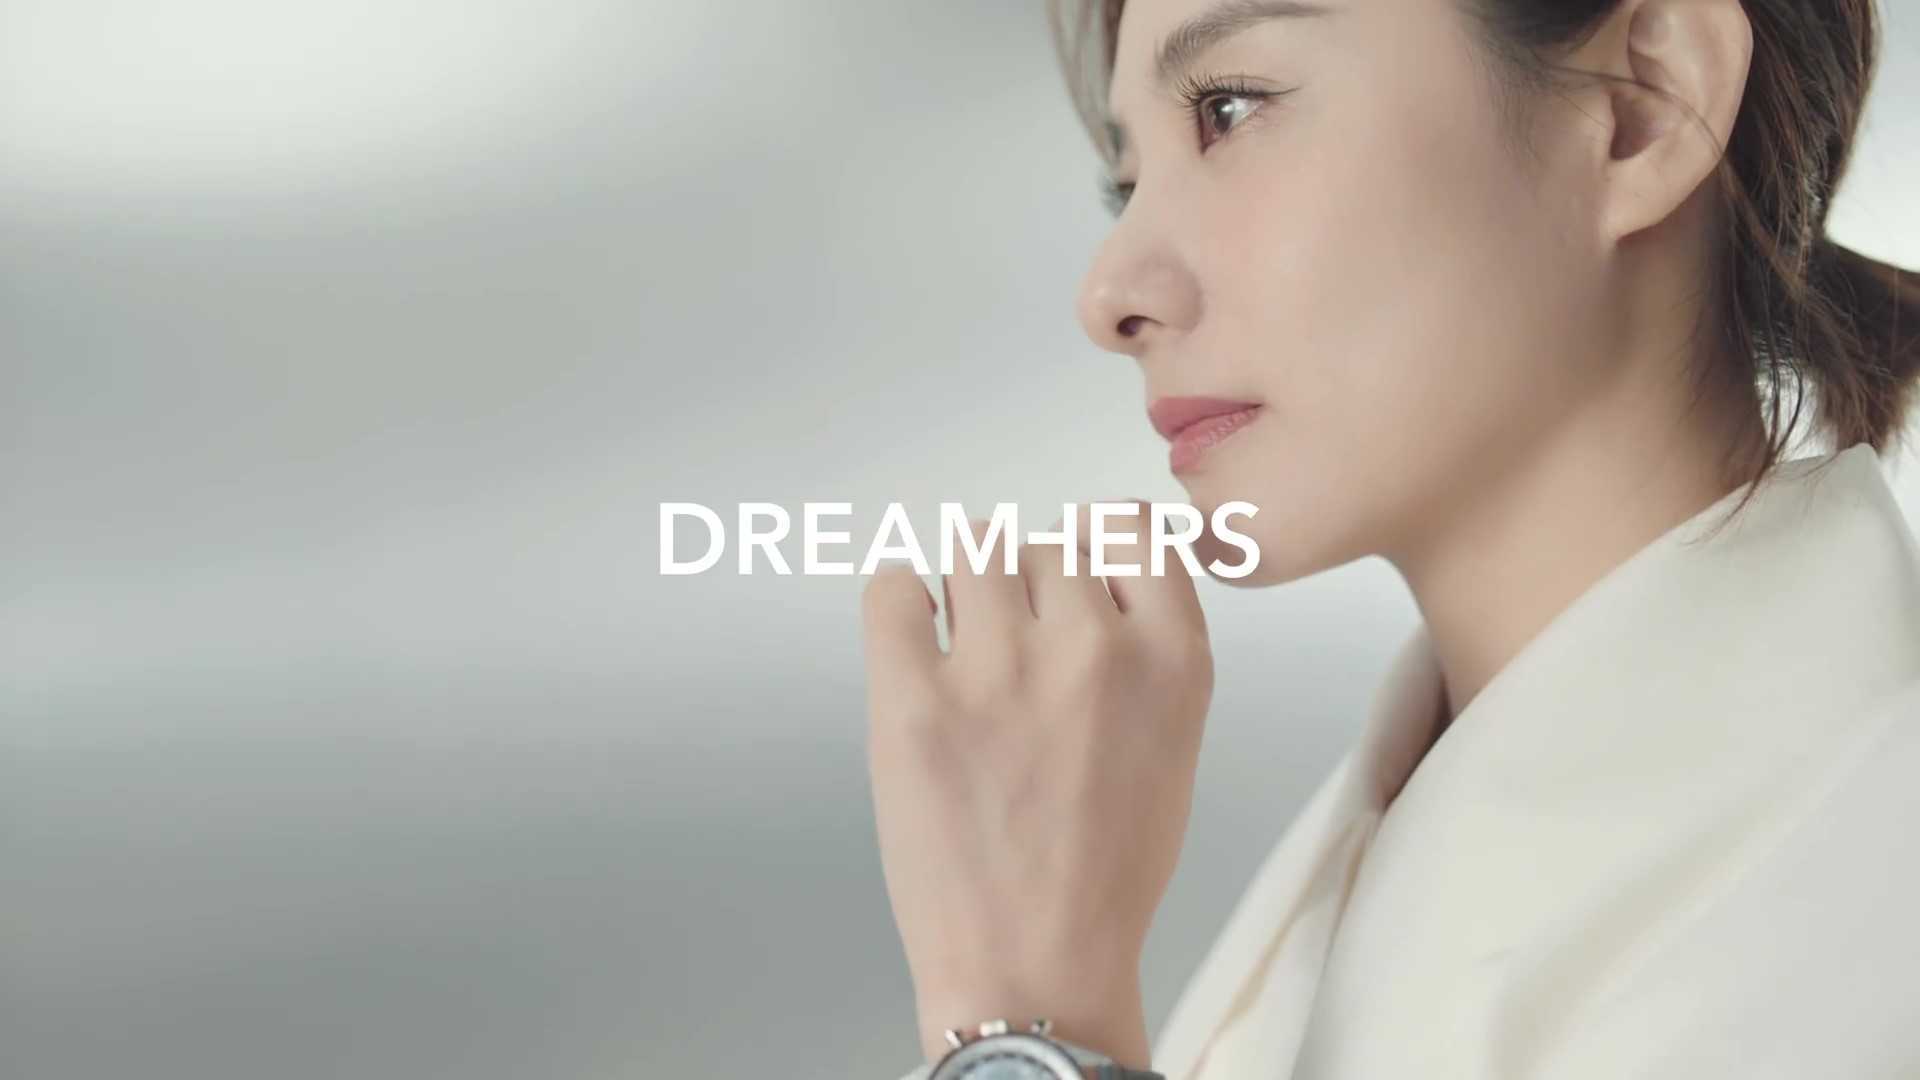 广告 | 真力时#Dreamhers#全球故事企划·中国特辑_刘璇